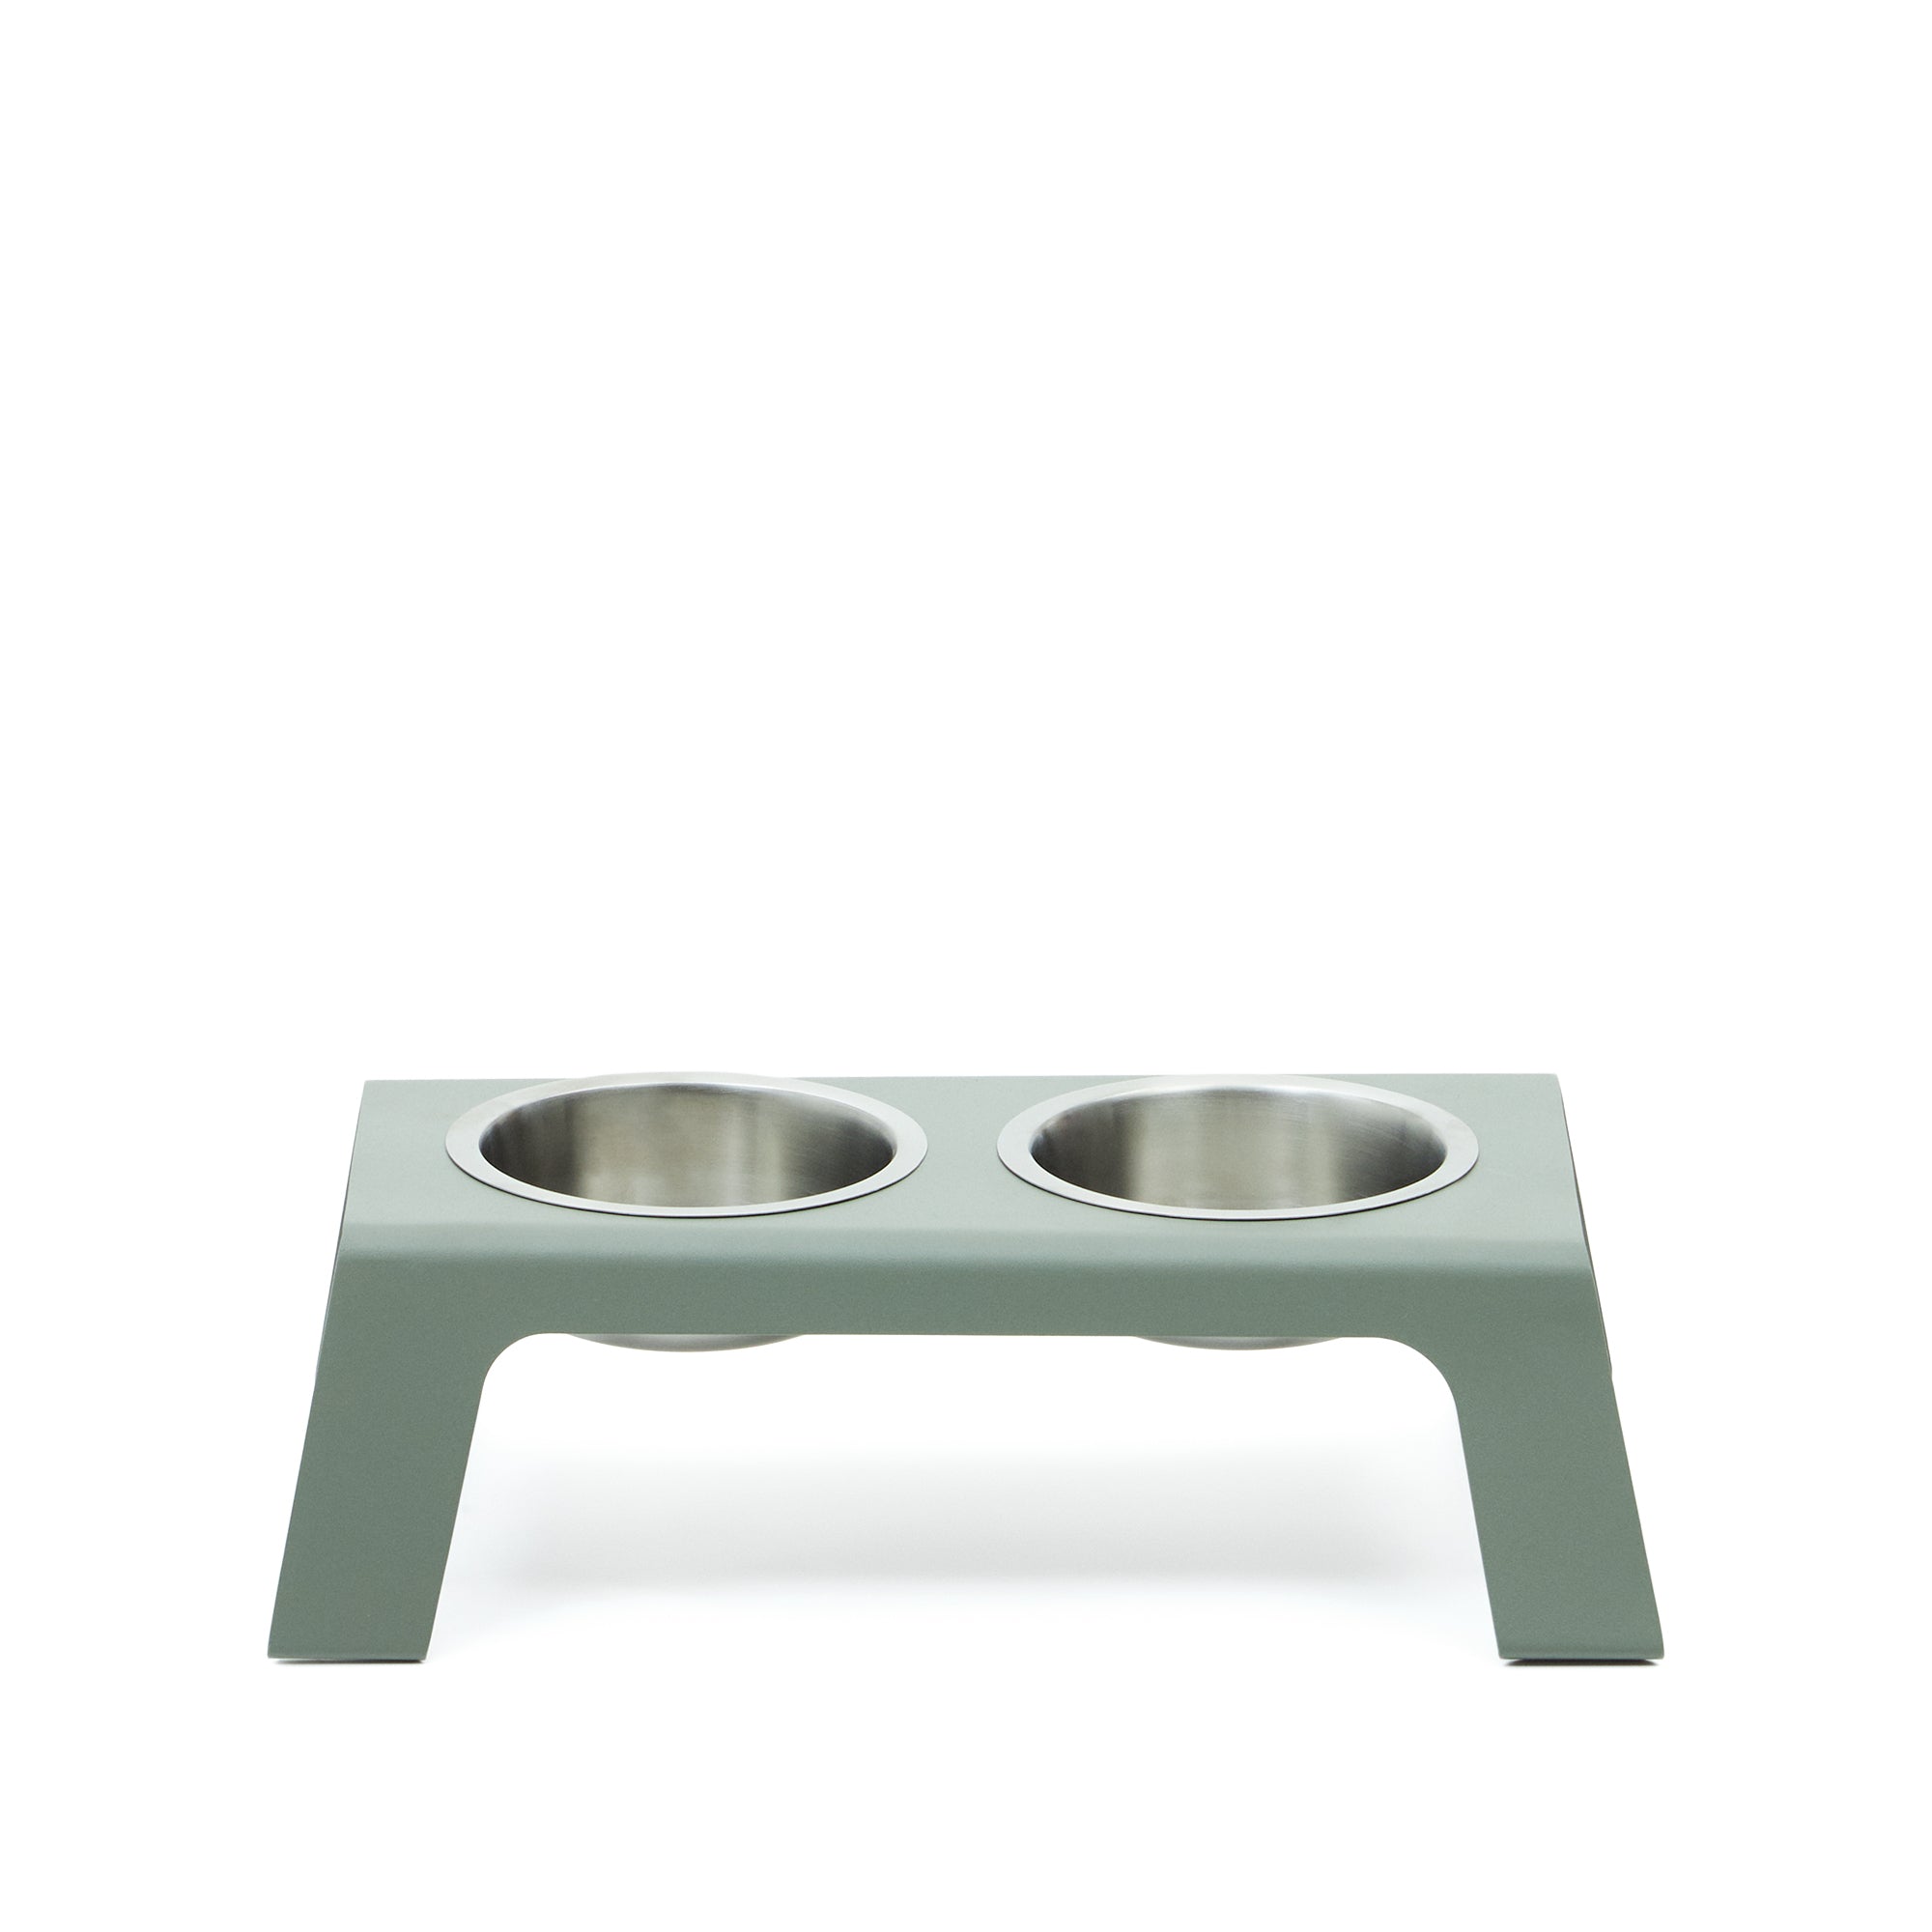 Rocky étel-/víztál háziállatoknak támlával, zöld rozsdamentes acél, 40 x 25 cm